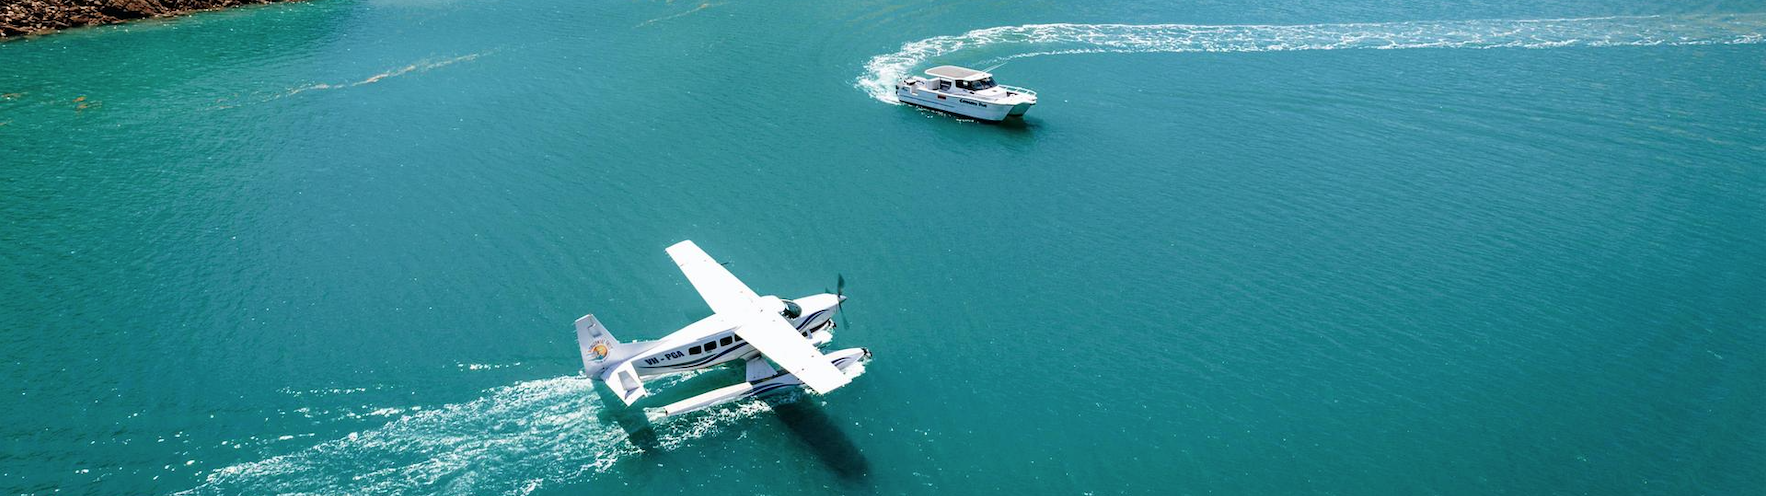 Derby Australie : un avion et un bateau dans l'eau